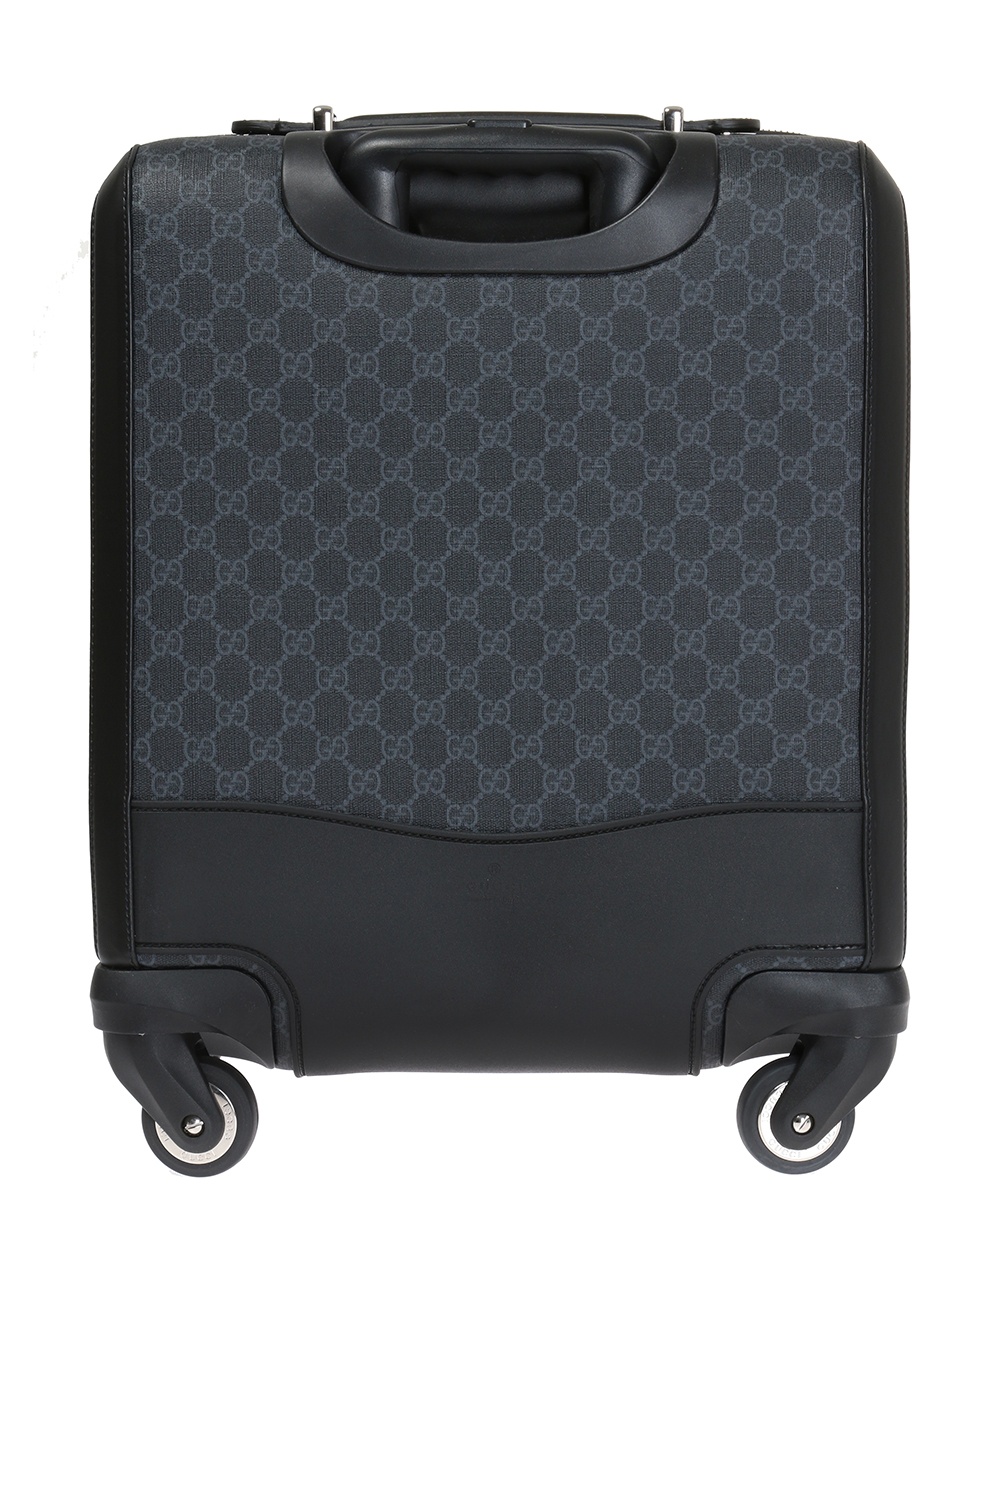 Gucci 'GG Supreme' suitcase